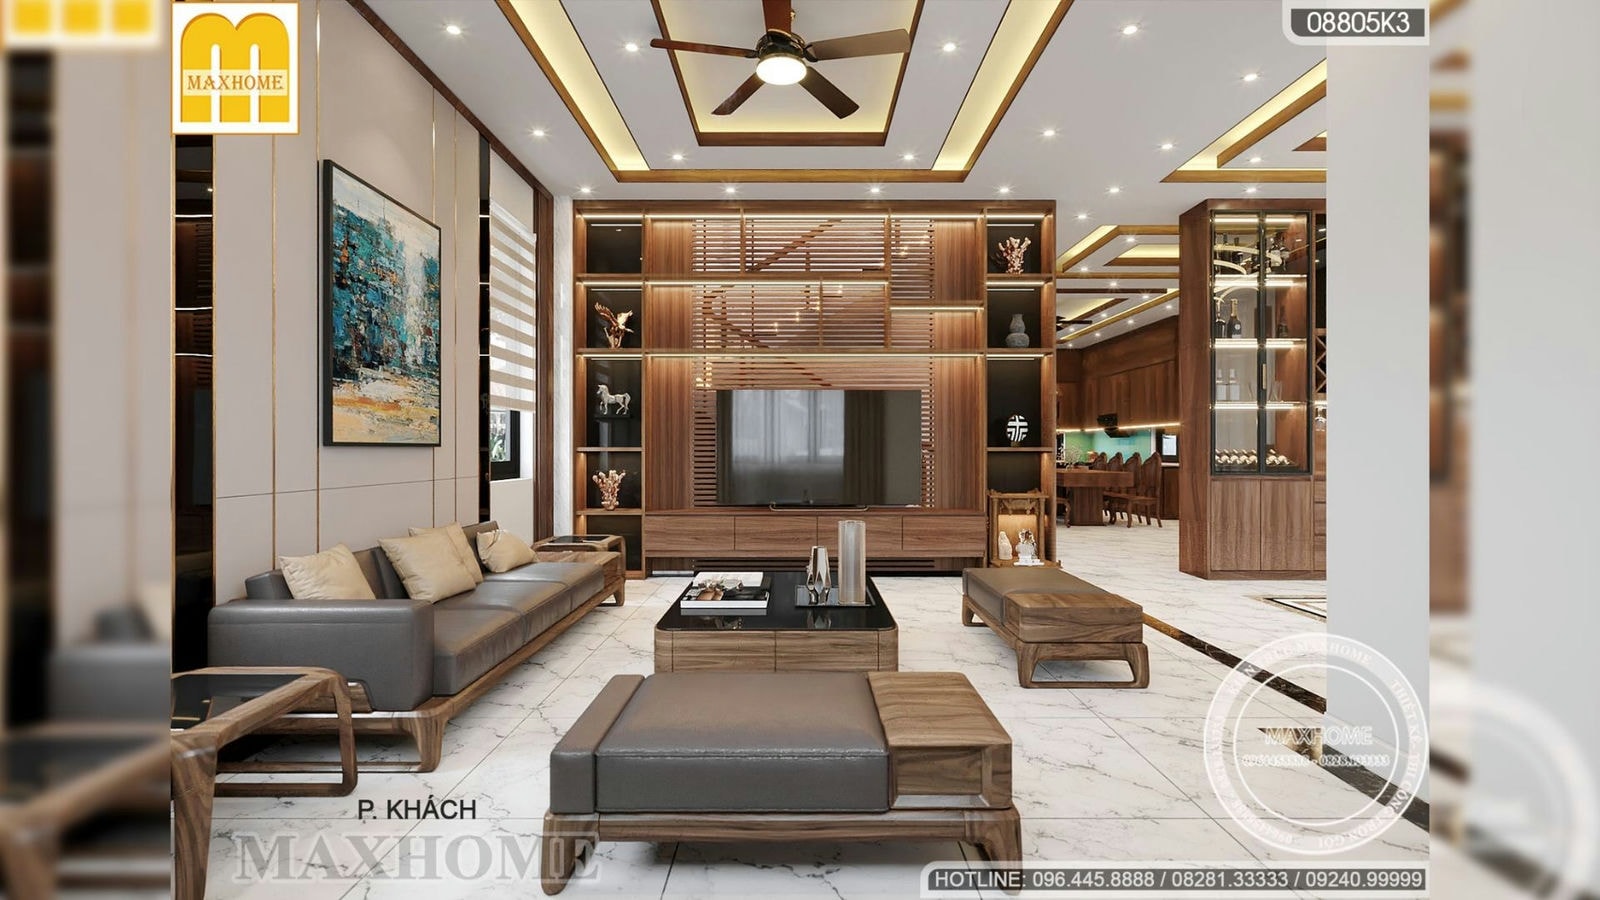 Thiết kế nội thất biệt thự hiện đại 2 tầng 1 tum SANG TRỌNG ấn tượng | MH02299